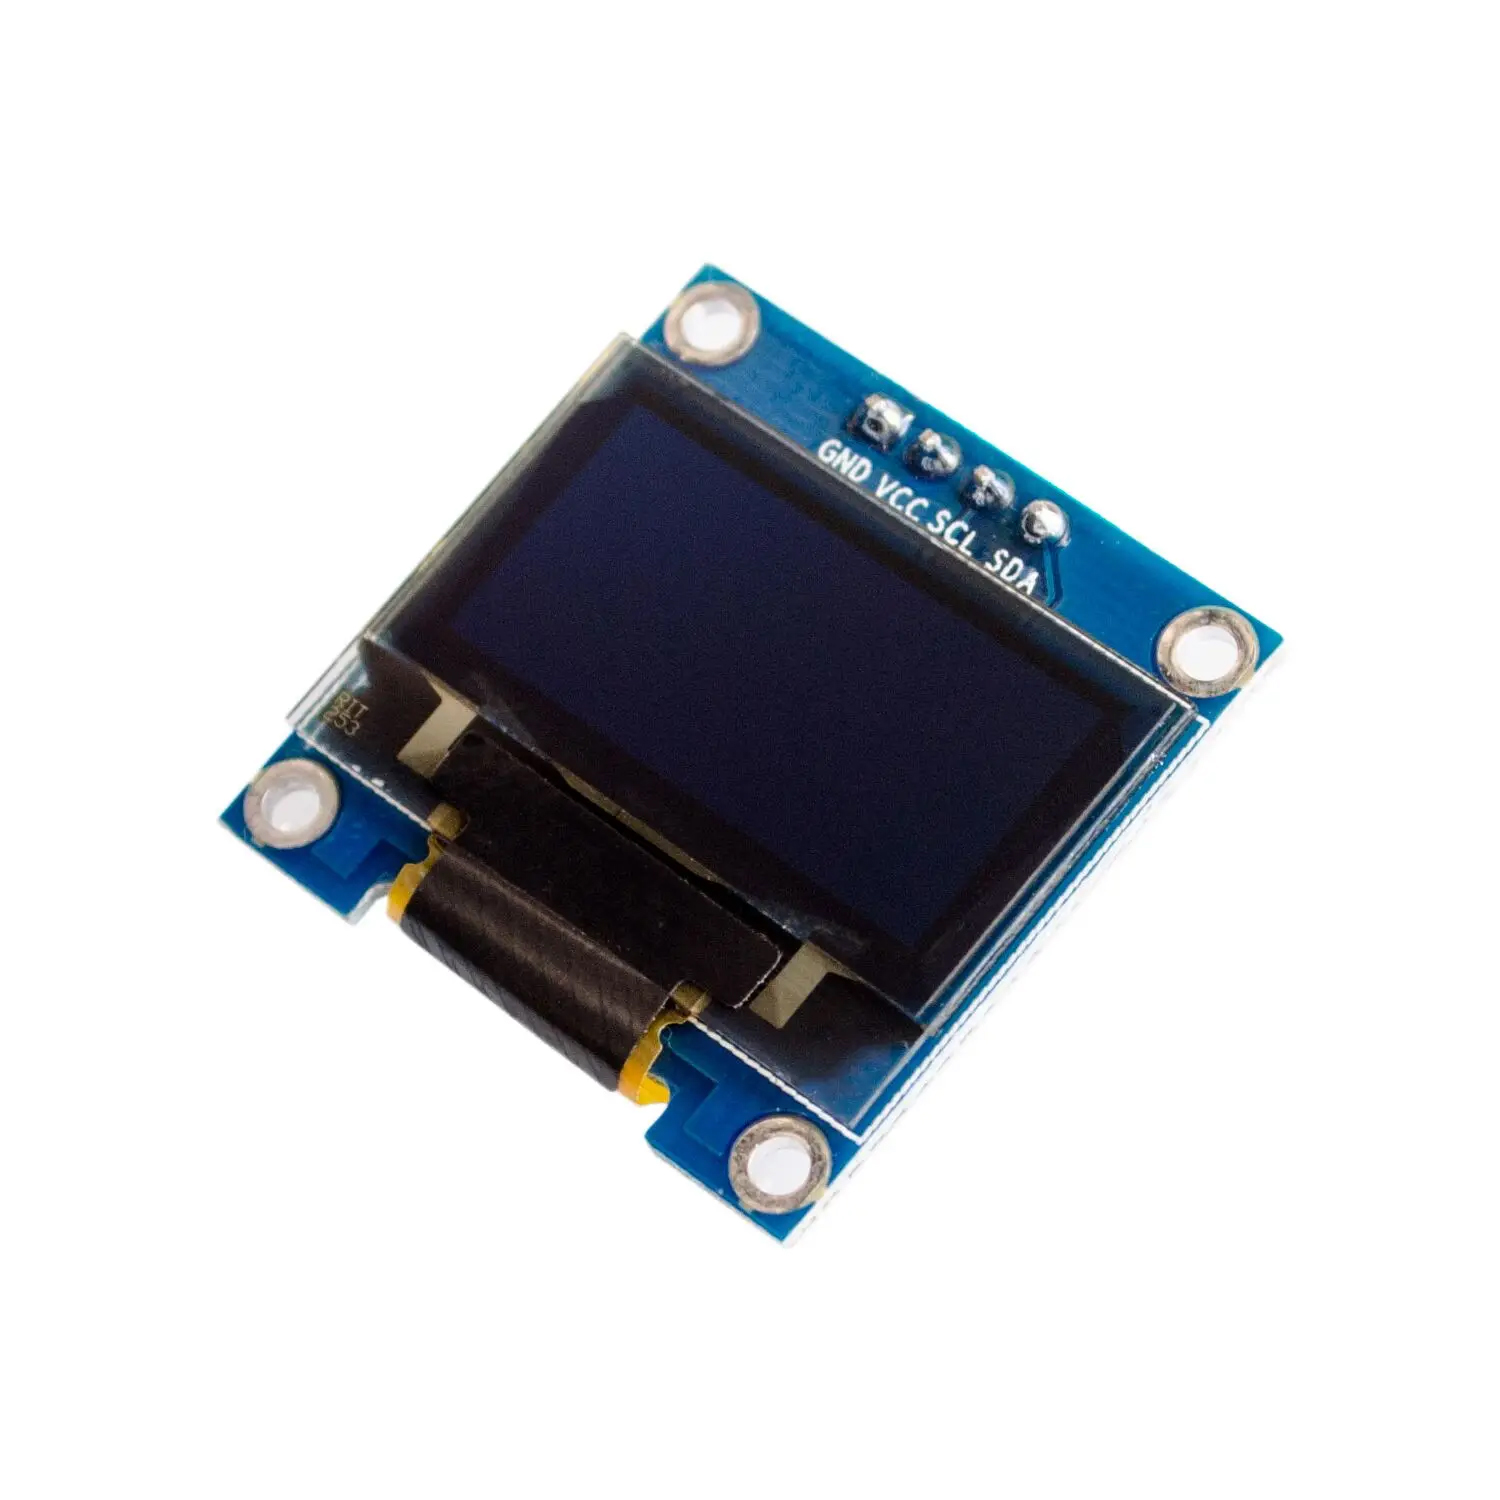 OLED дисплей 0.96" I2C 128x64 (синий), фото